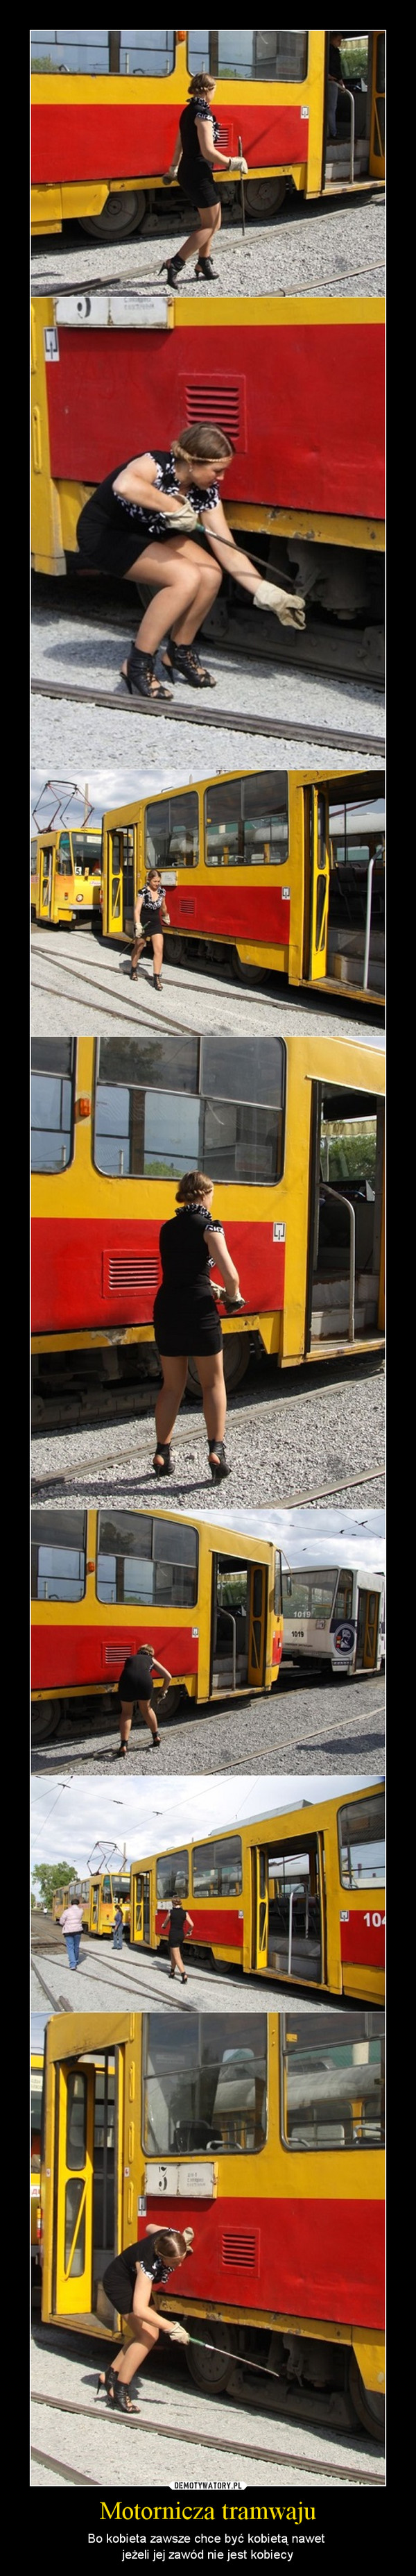 Motornicza tramwaju – Bo kobieta zawsze chce być kobietą nawet jeżeli jej zawód nie jest kobiecy 